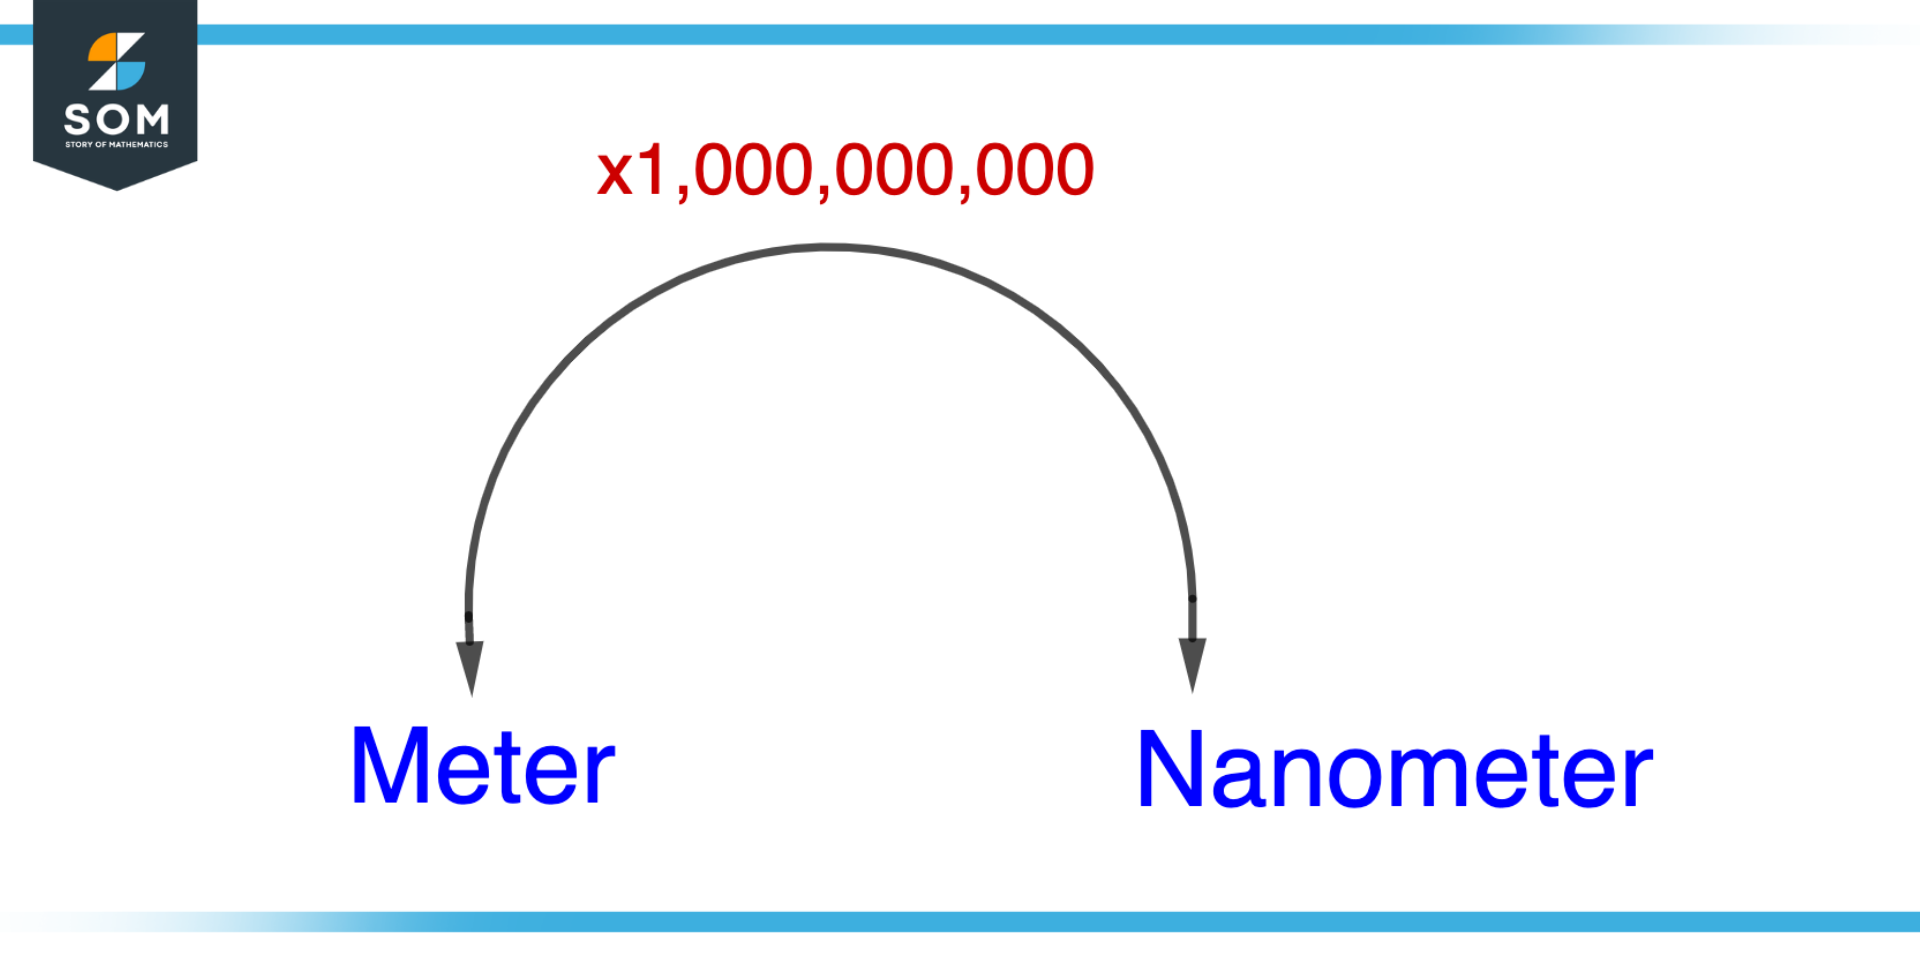 Converting Meter to Nanometer